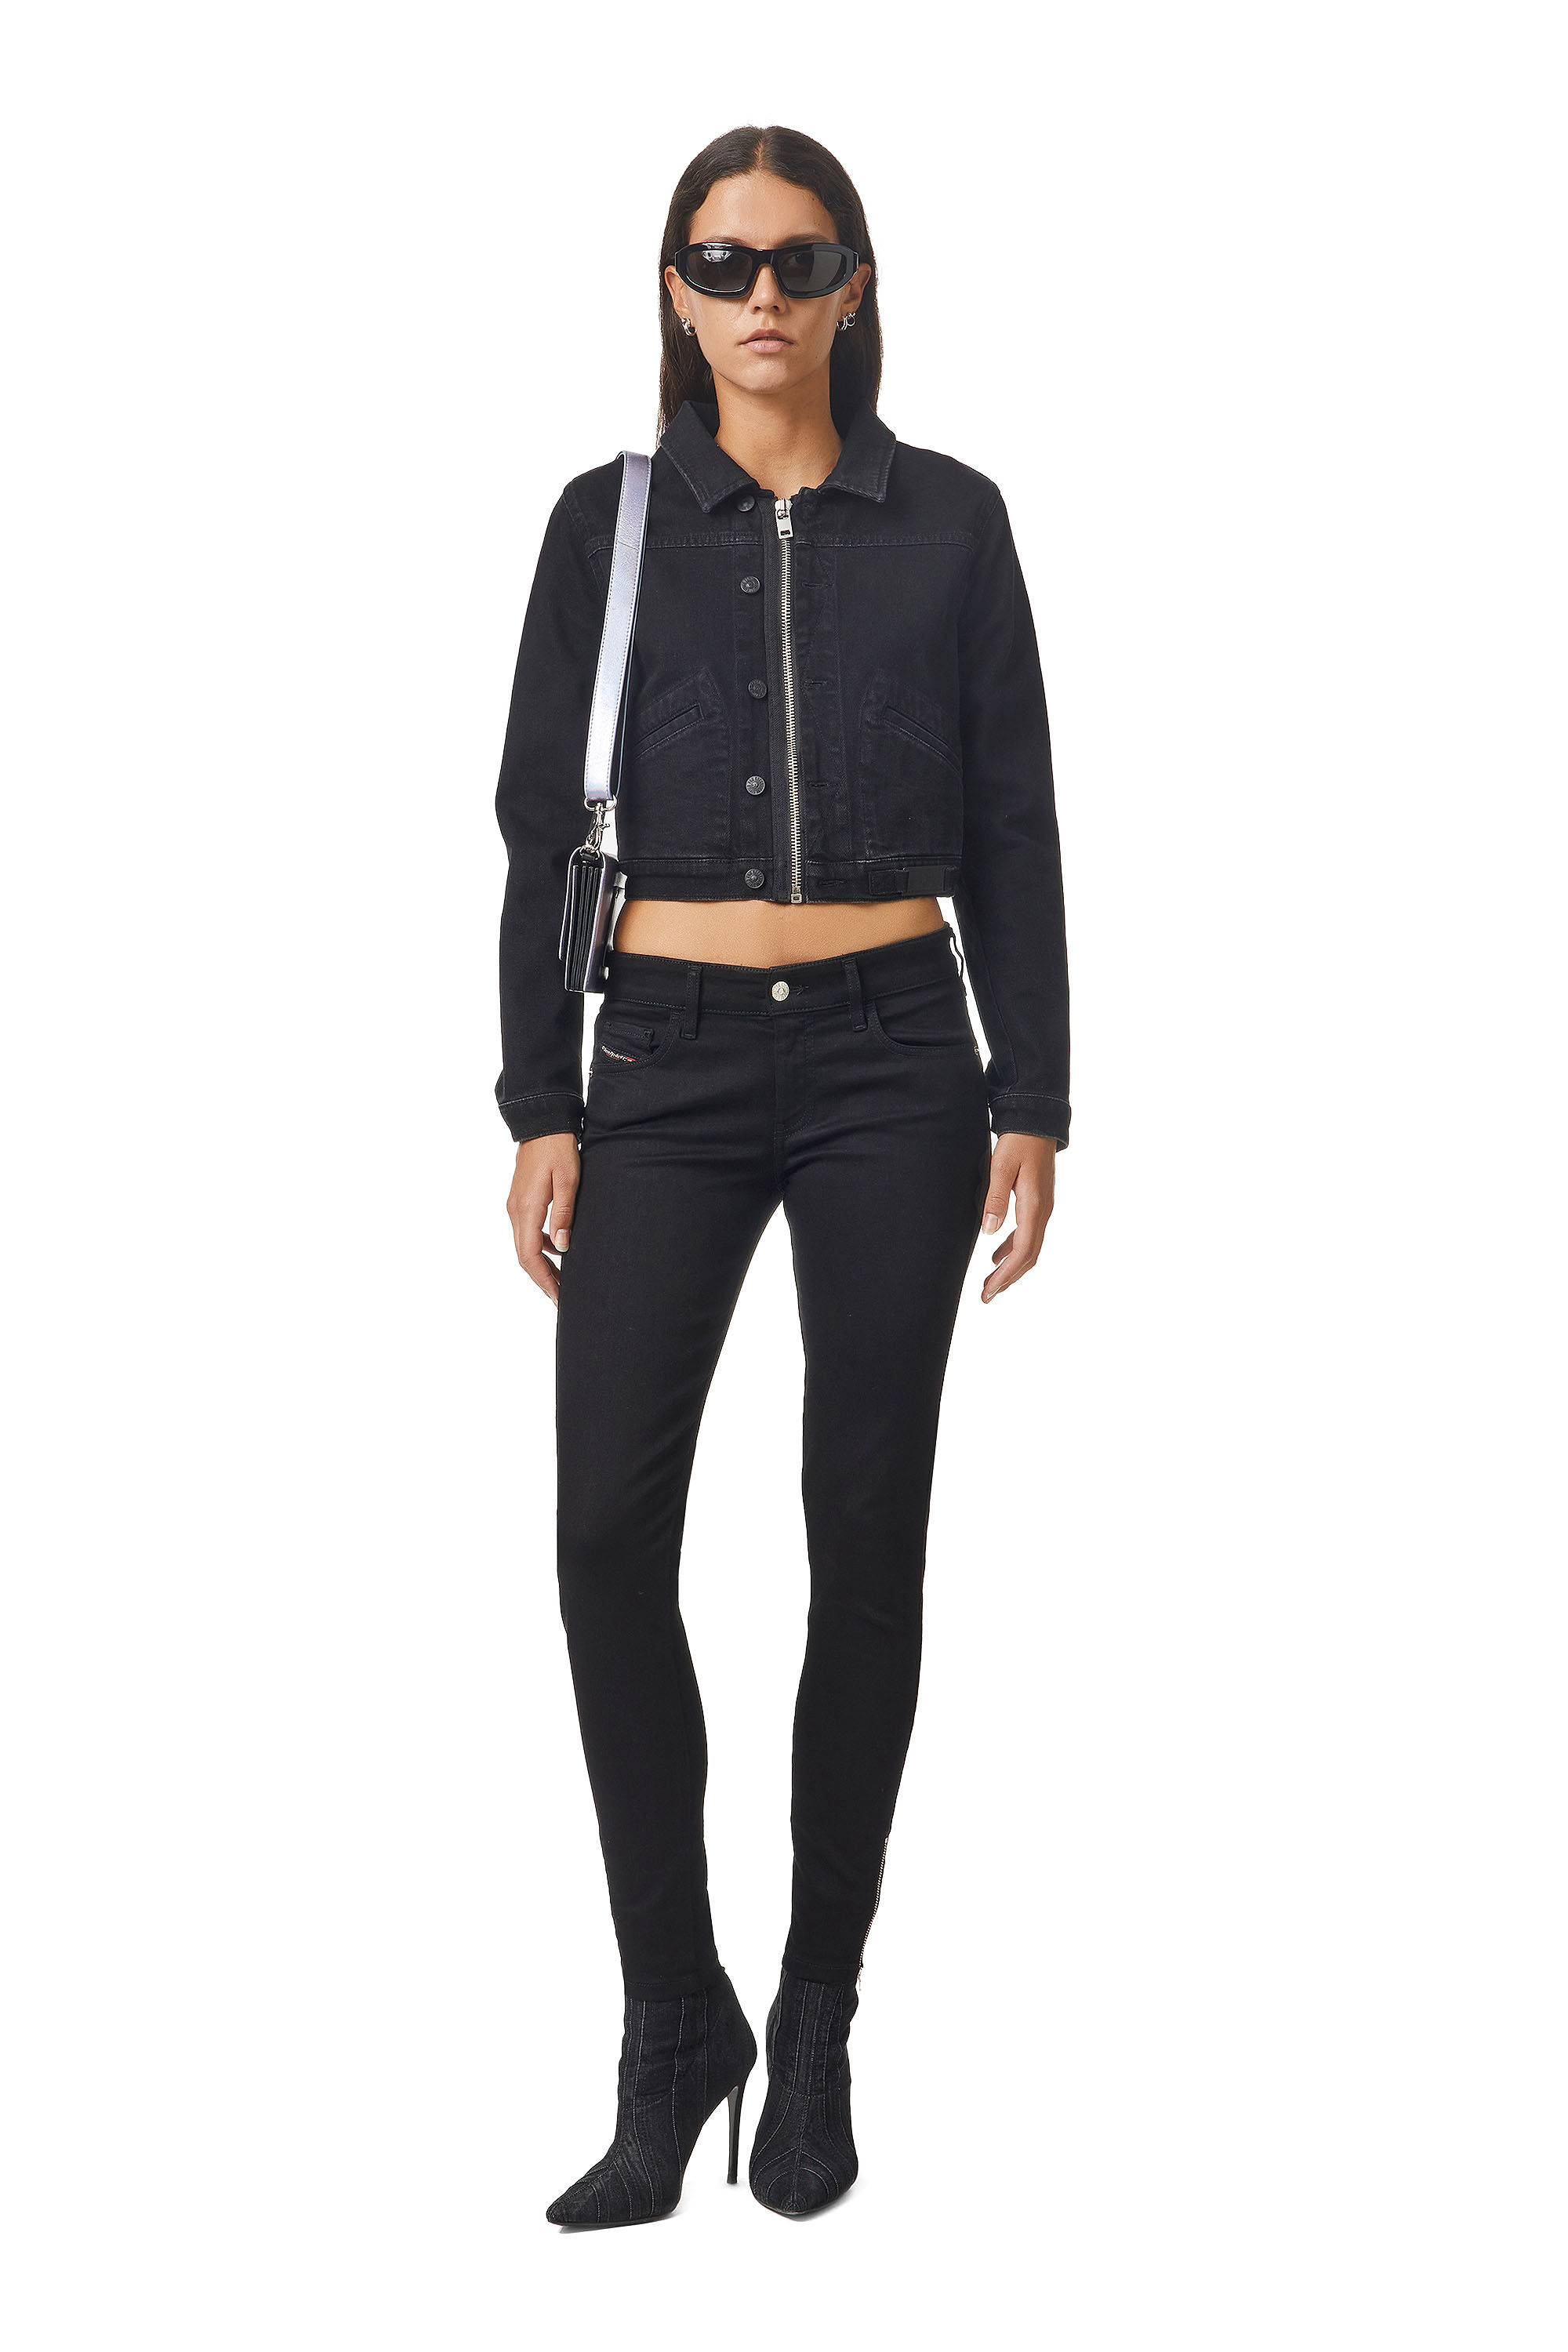 SLANDY-LOW-ZIP Woman: Super skinny Black/Dark grey Jeans | Diesel.com